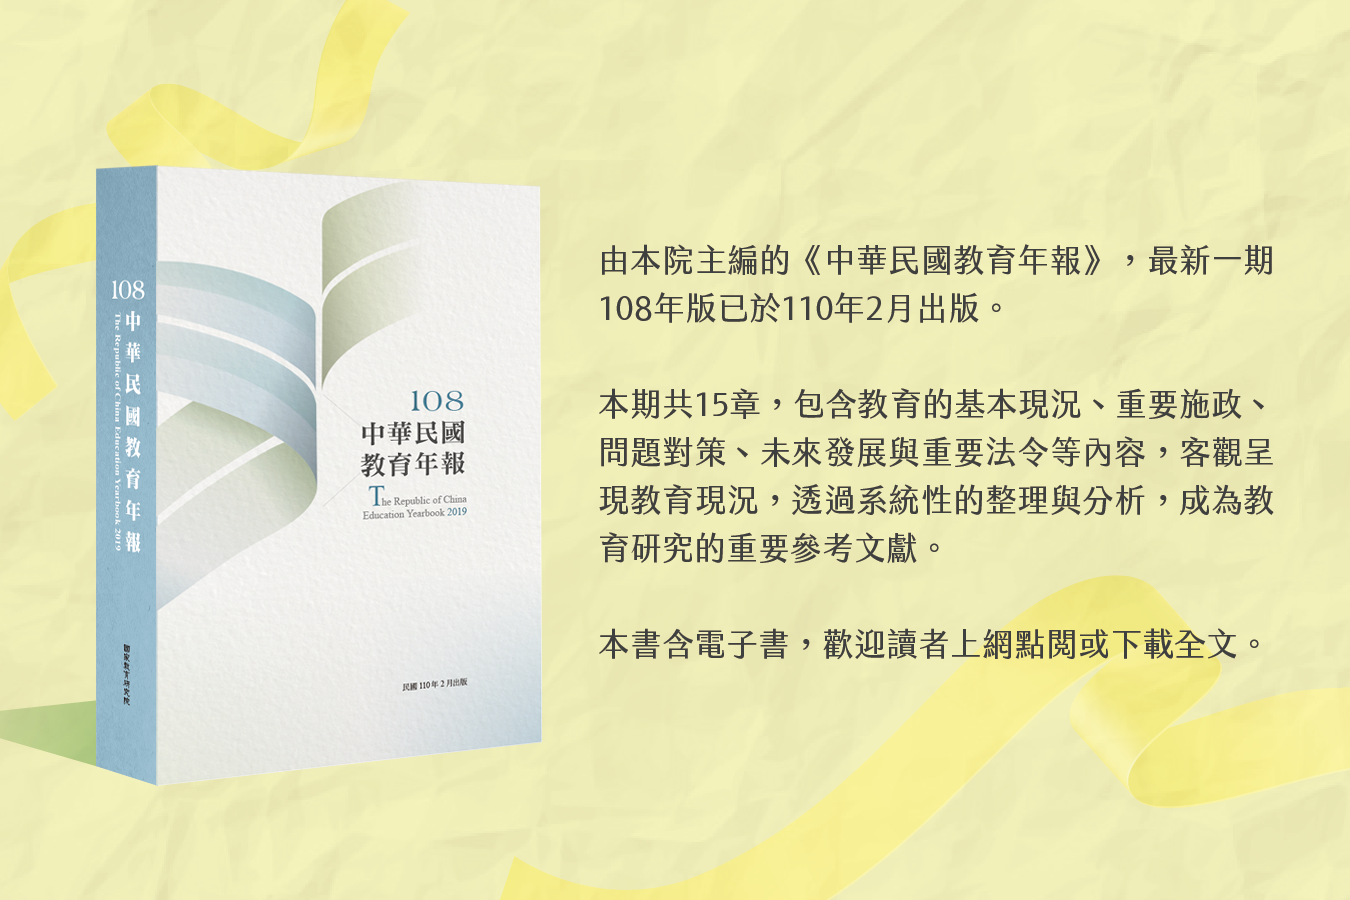 《中華民國教育年報》108年版出刊——教育發展動態之參考